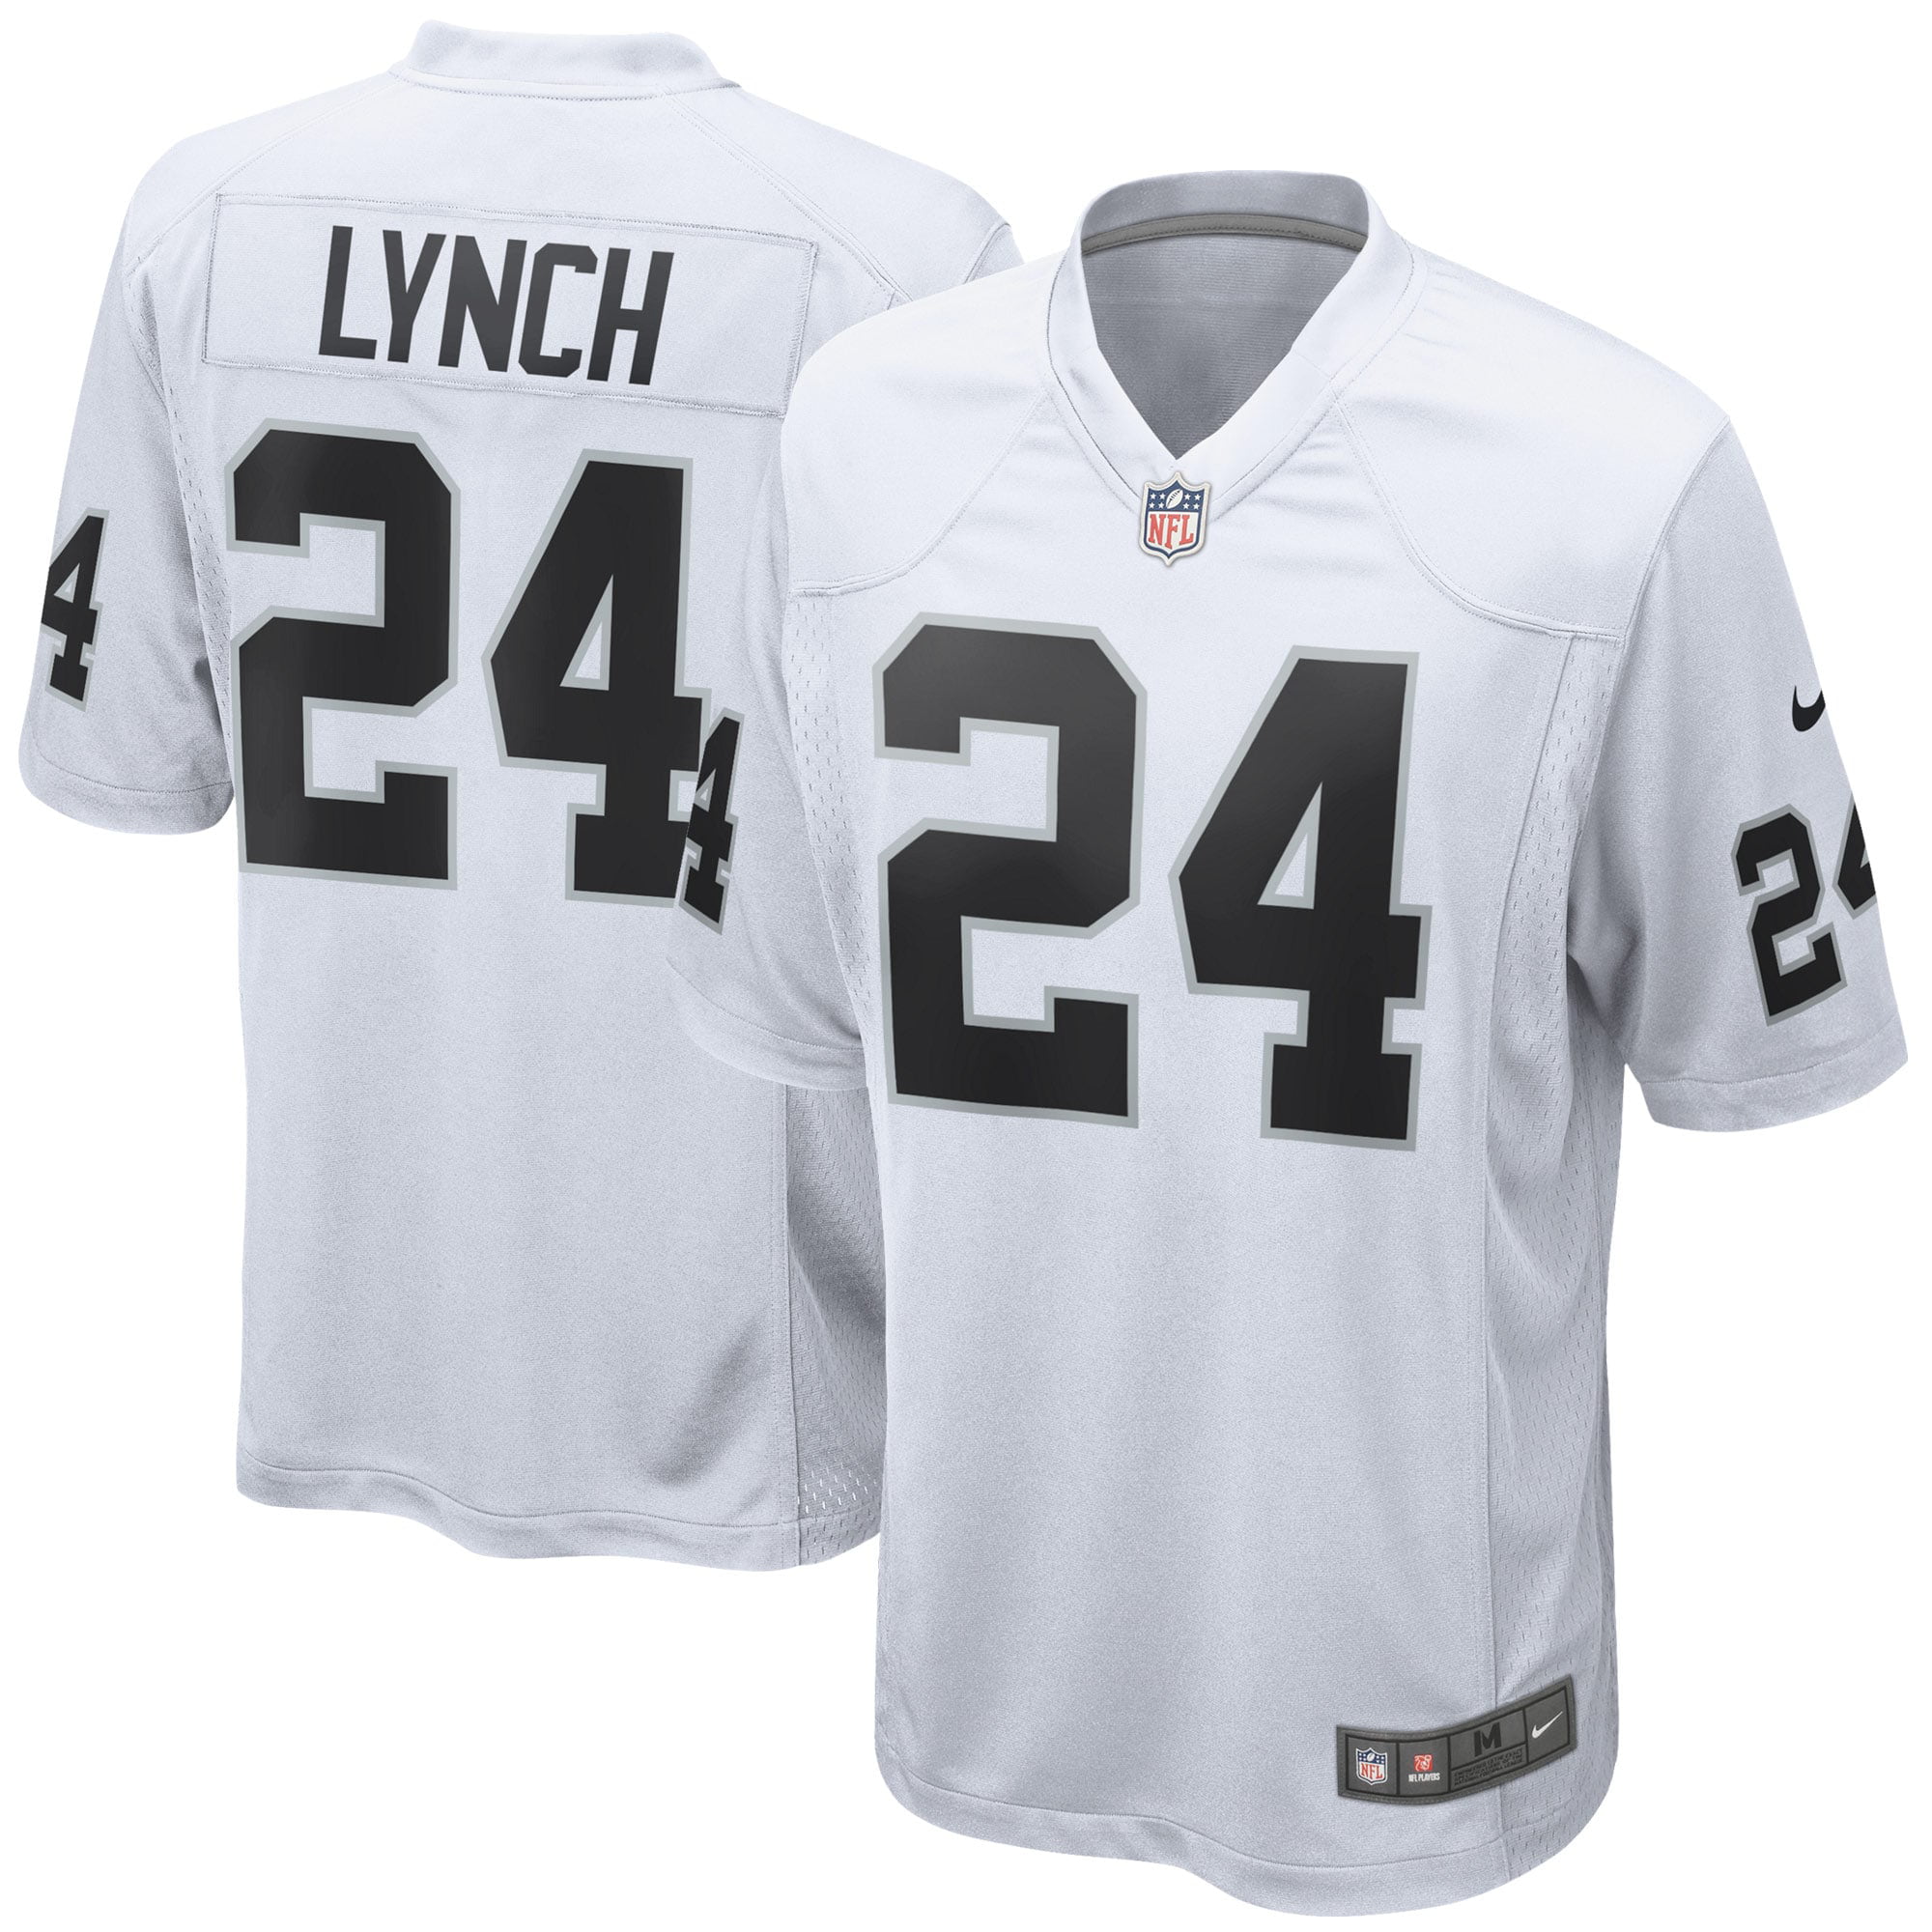 Marshawn Lynch Las Vegas Raiders Nike Game Jersey - White - Walmart.com